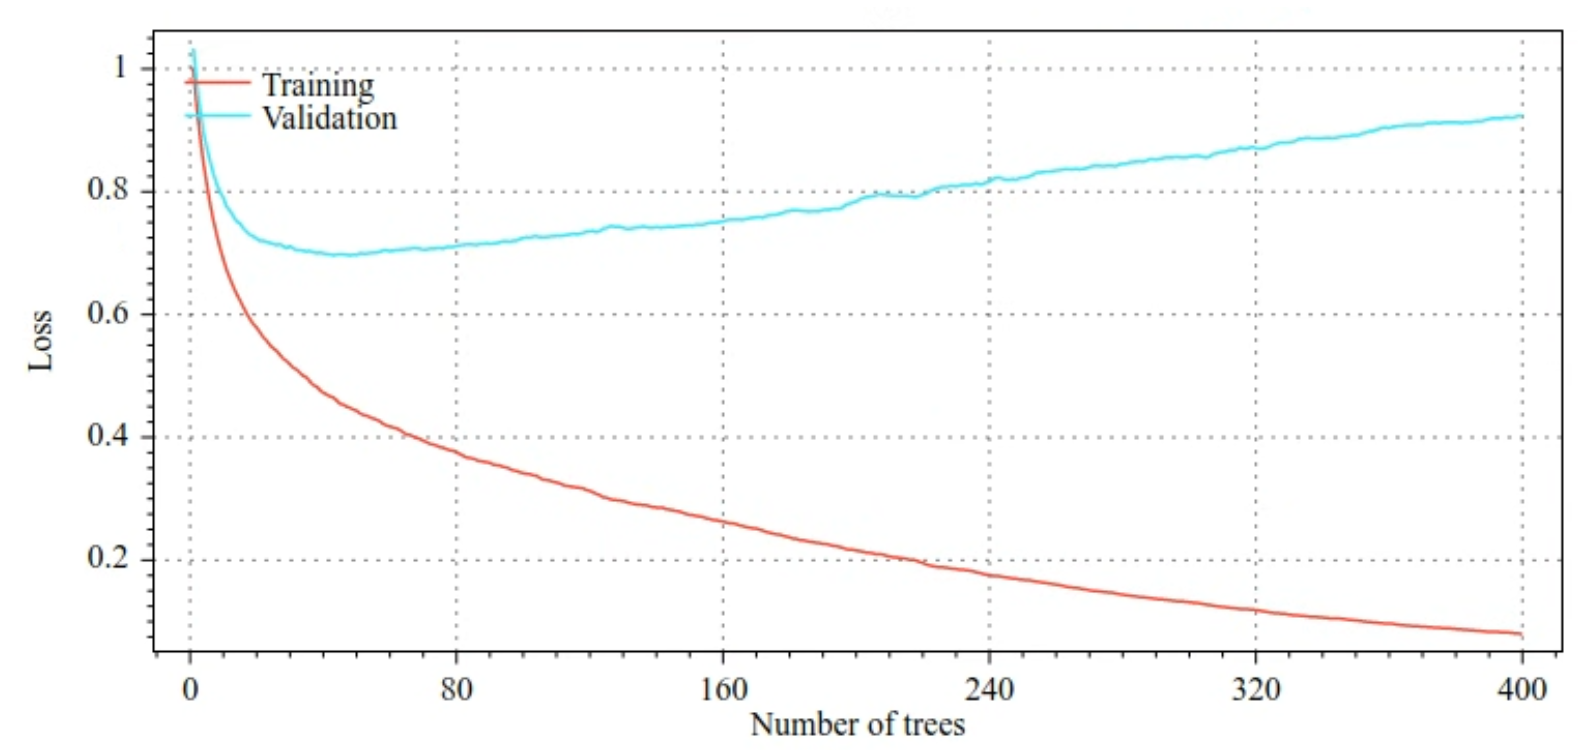 训练损失和验证损失与决策树数量的图表。训练损失会随着决策树数量的增加而逐渐减少。不过，验证损失只会在约 40 个决策树之前减少。如果决策树超过 40 个，验证损失实际上会增加。使用 400 个决策树，训练损失与验证损失之间的差距非常大。